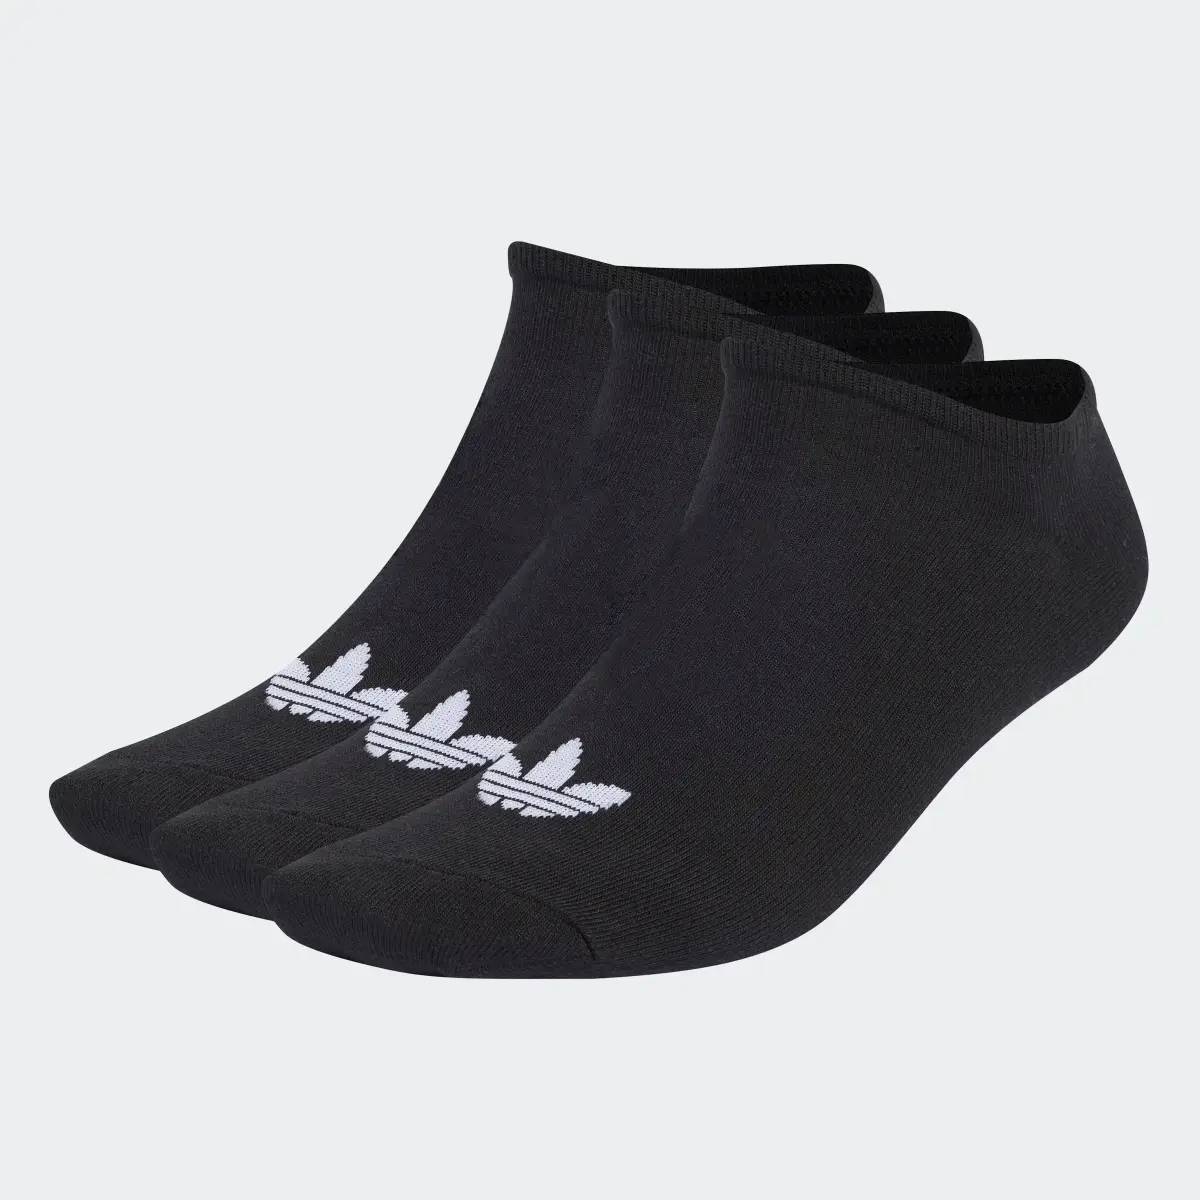 Adidas Trefoil Liner Socken, 6 Paar. 2